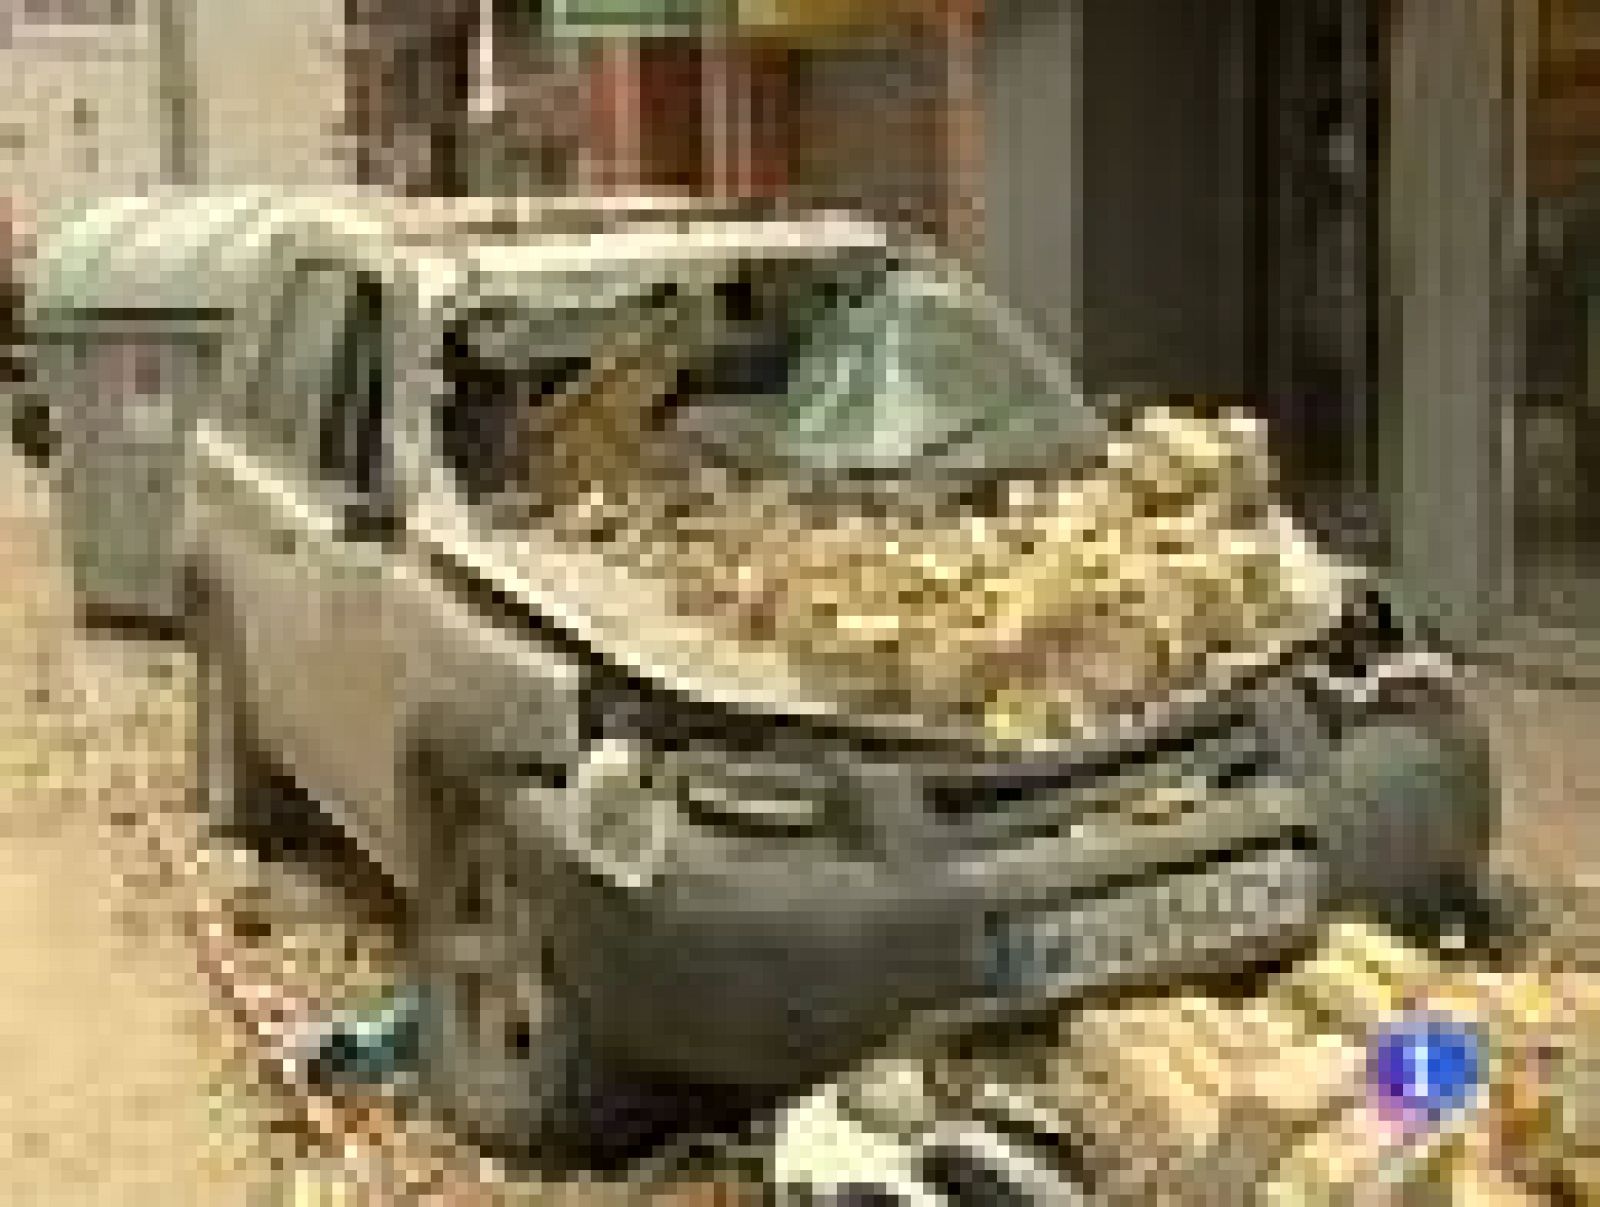  Los daños materiales en Lorca aún no se han cuantificado